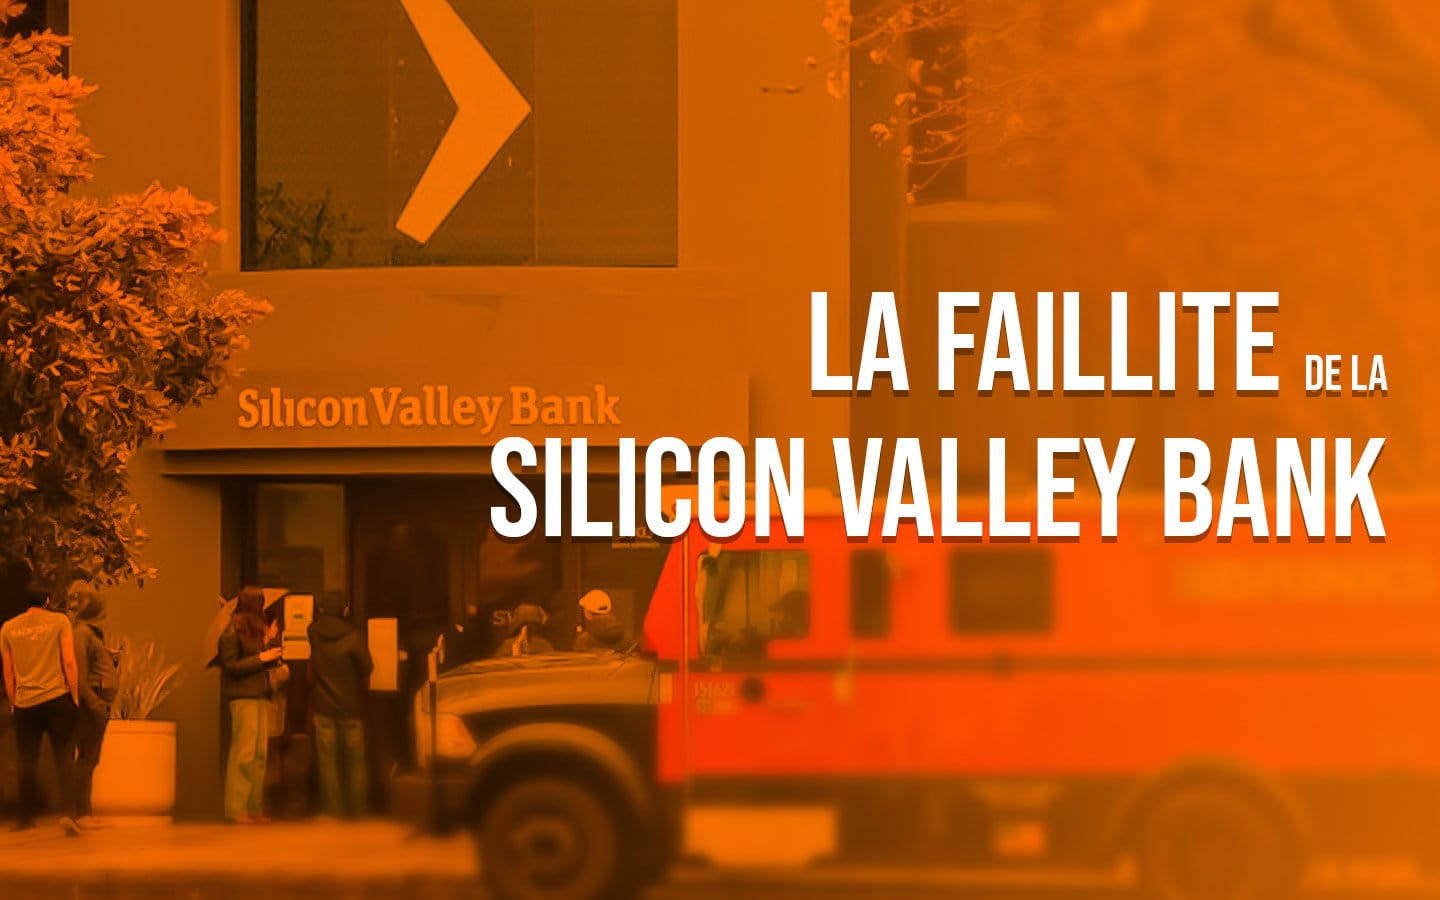 Faillite de la Silicon Valley Bank : quelques éléments d’explication sur cette crise